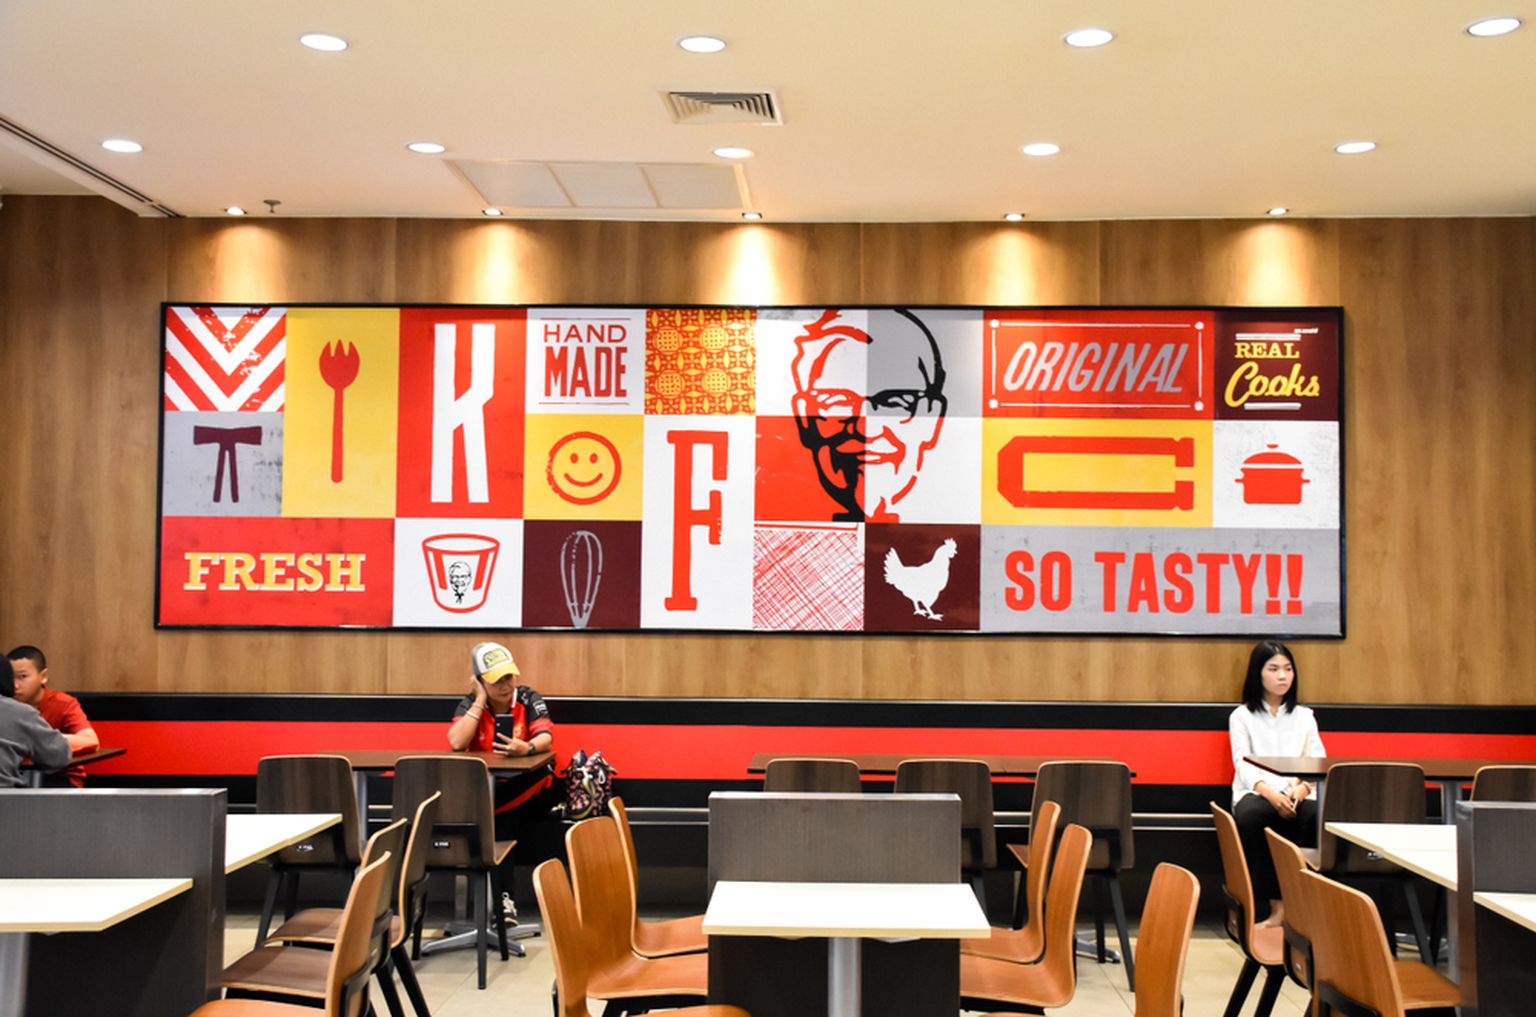 KFC restoran. Pilt on illustreeriv.